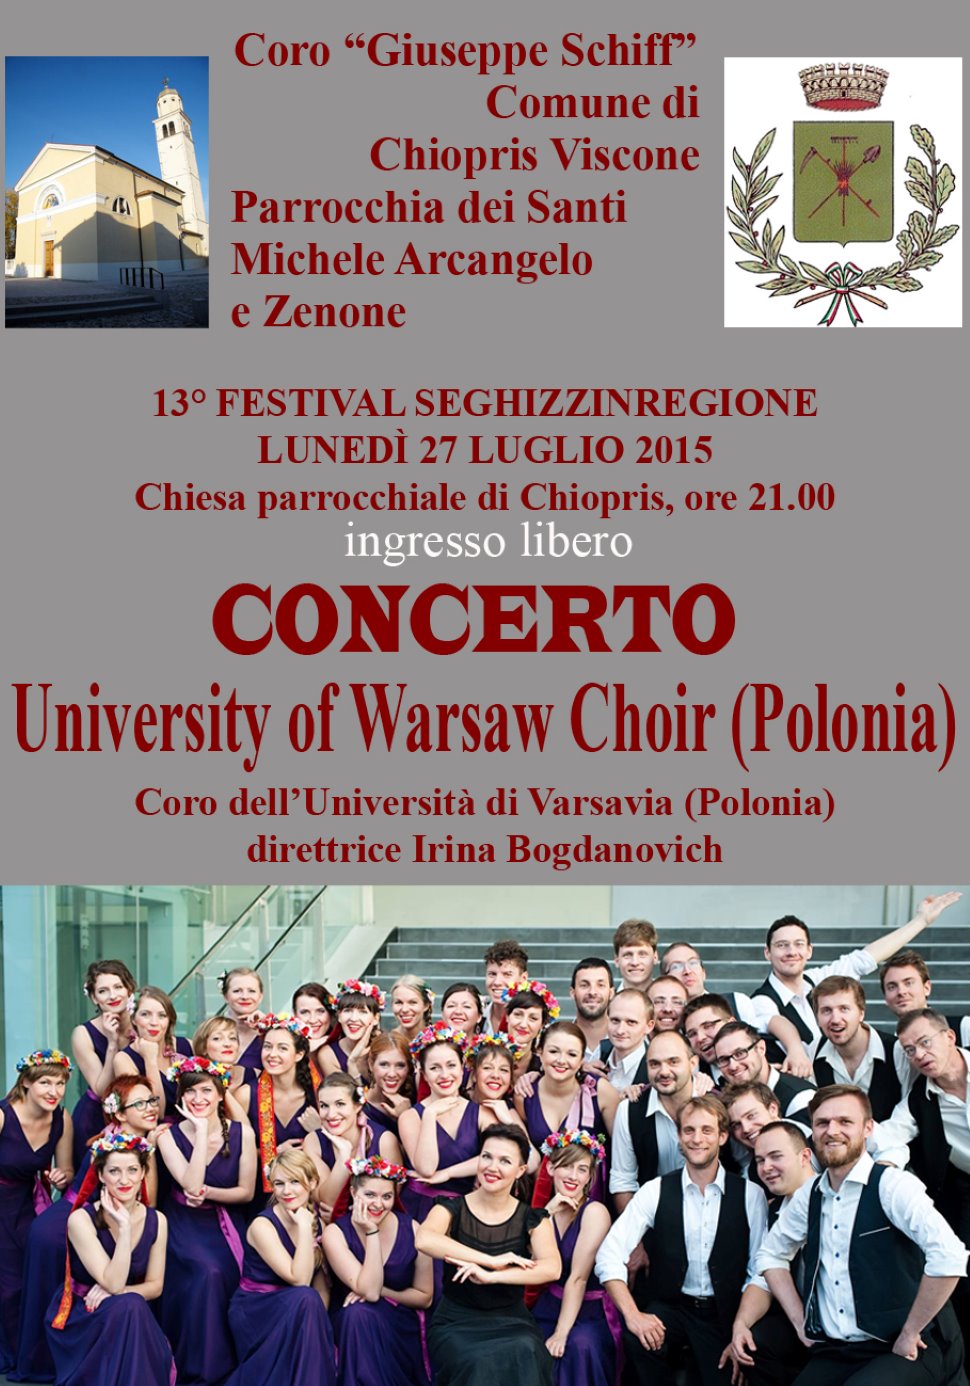 13° FESTIVAL SEGHIZZINREGIONE concerto a Chiopris (UD)